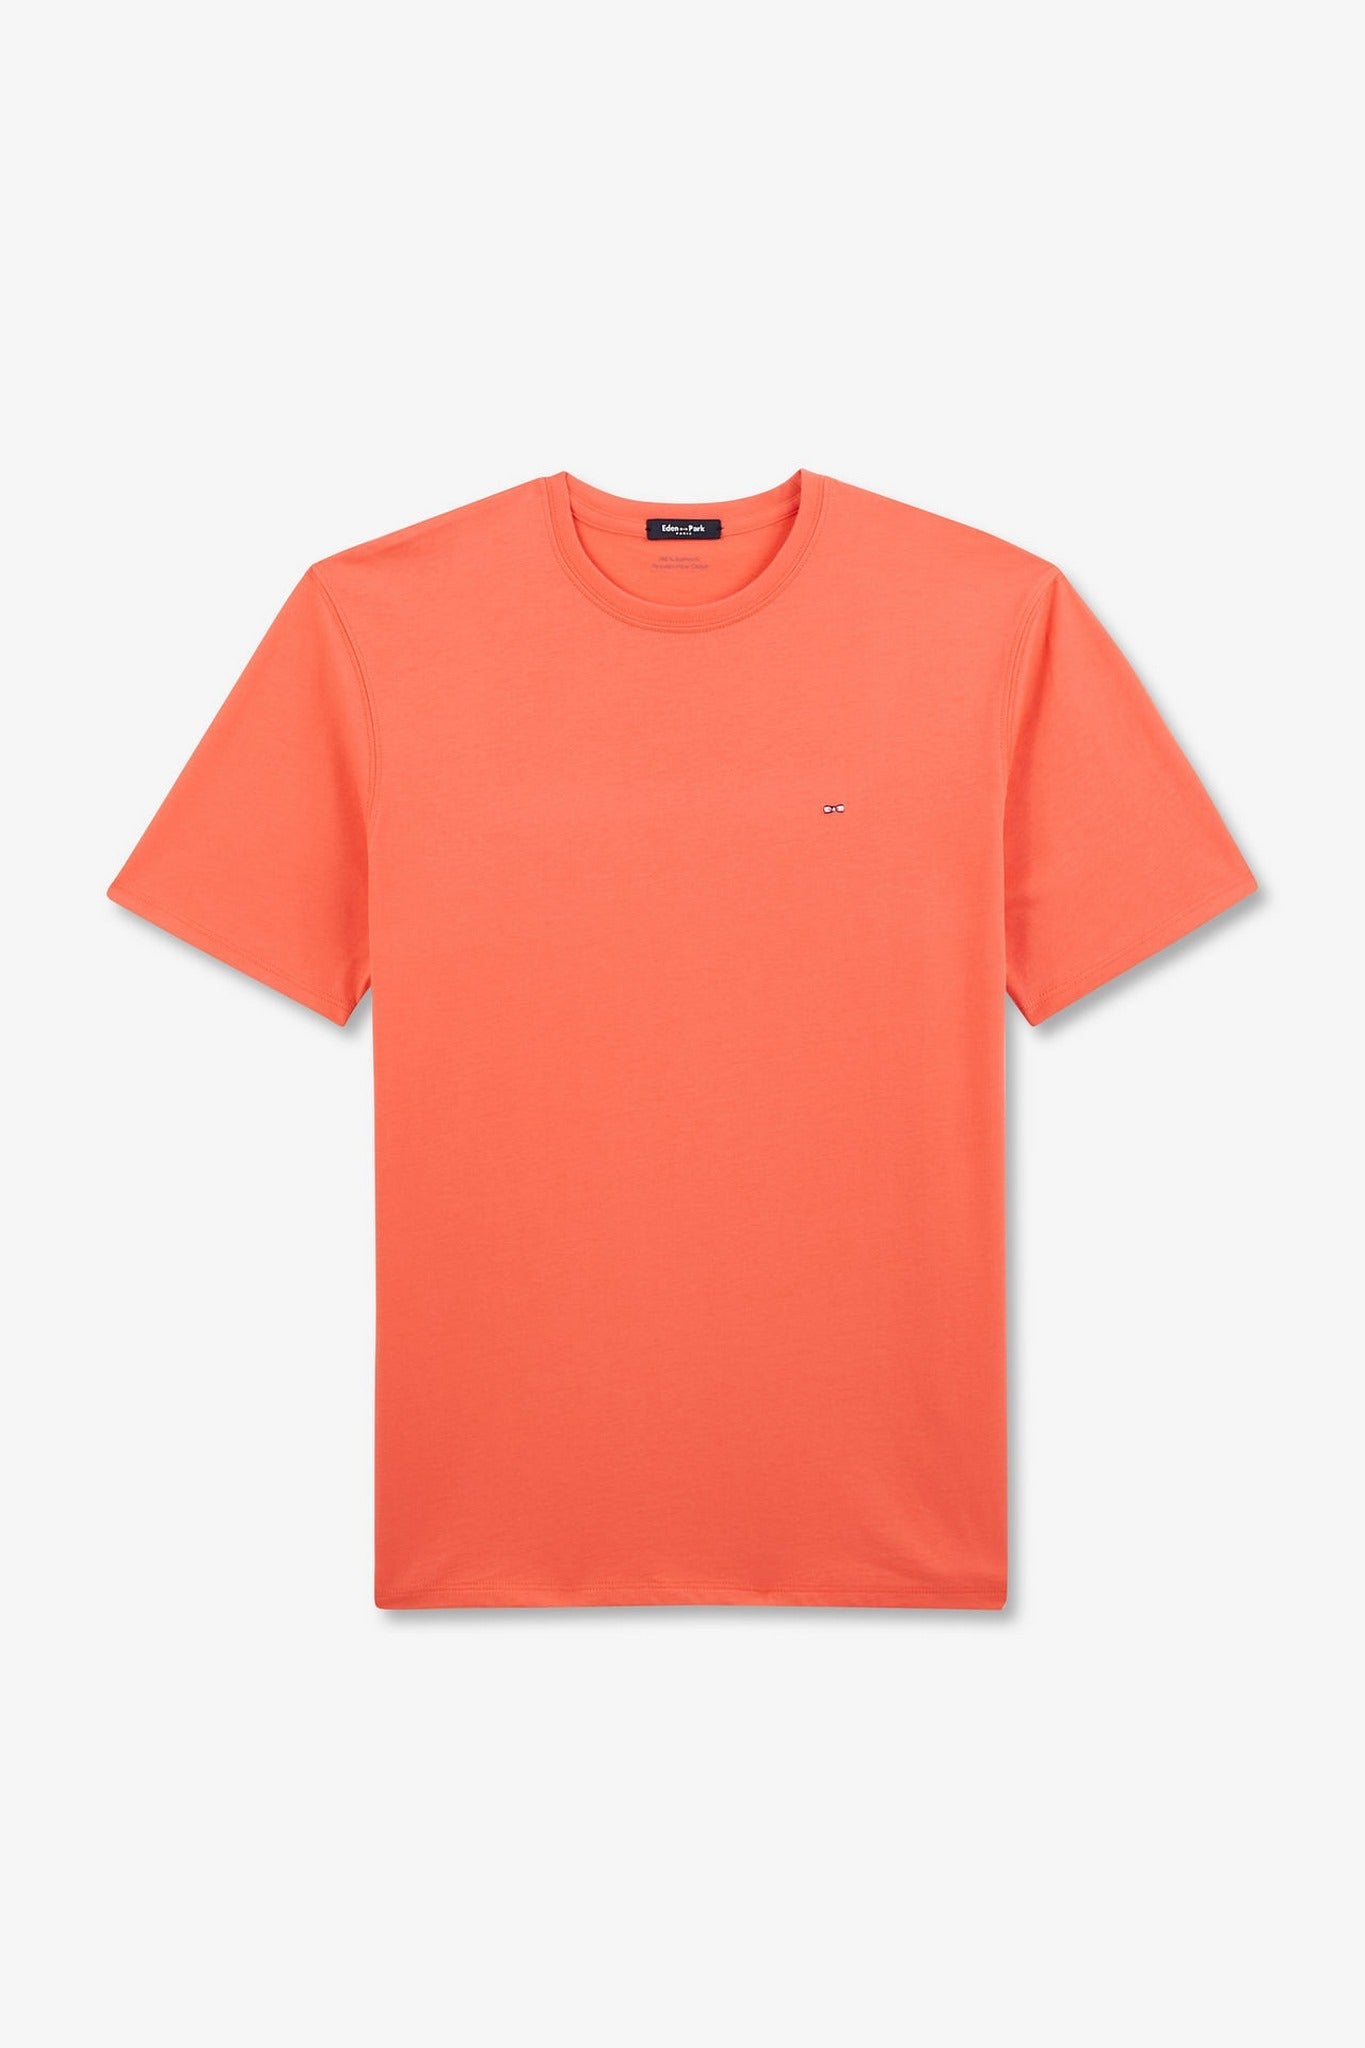 Pink short-sleeved t-shirt